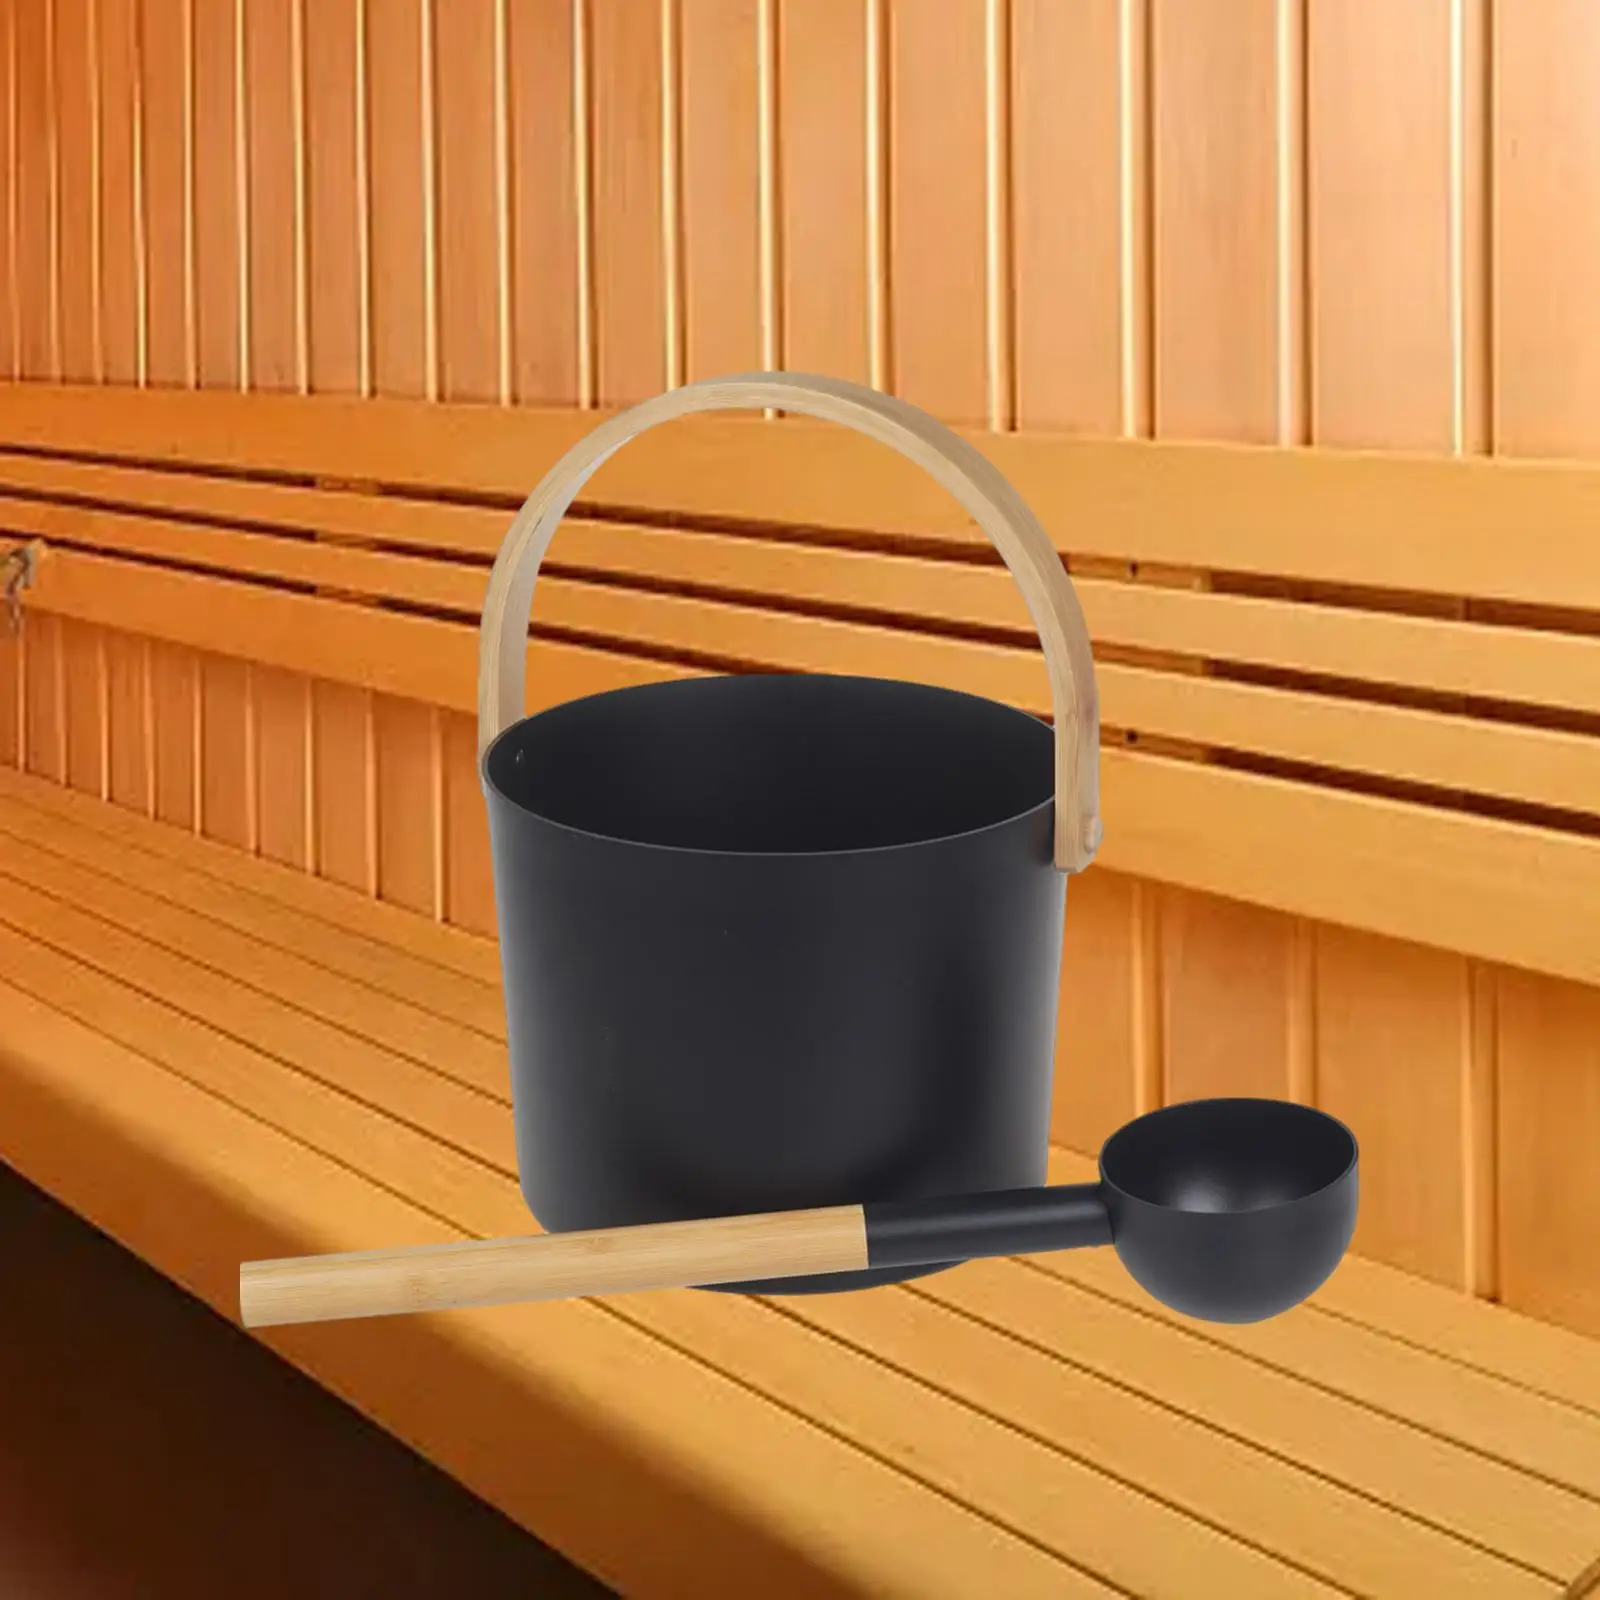 Aluminum Sauna Bucket with Ladle Durable Bamboo Handle 7 Liter SPA Sauna Barrel for Bathtub Household Sauna Room Bathroom Hotel